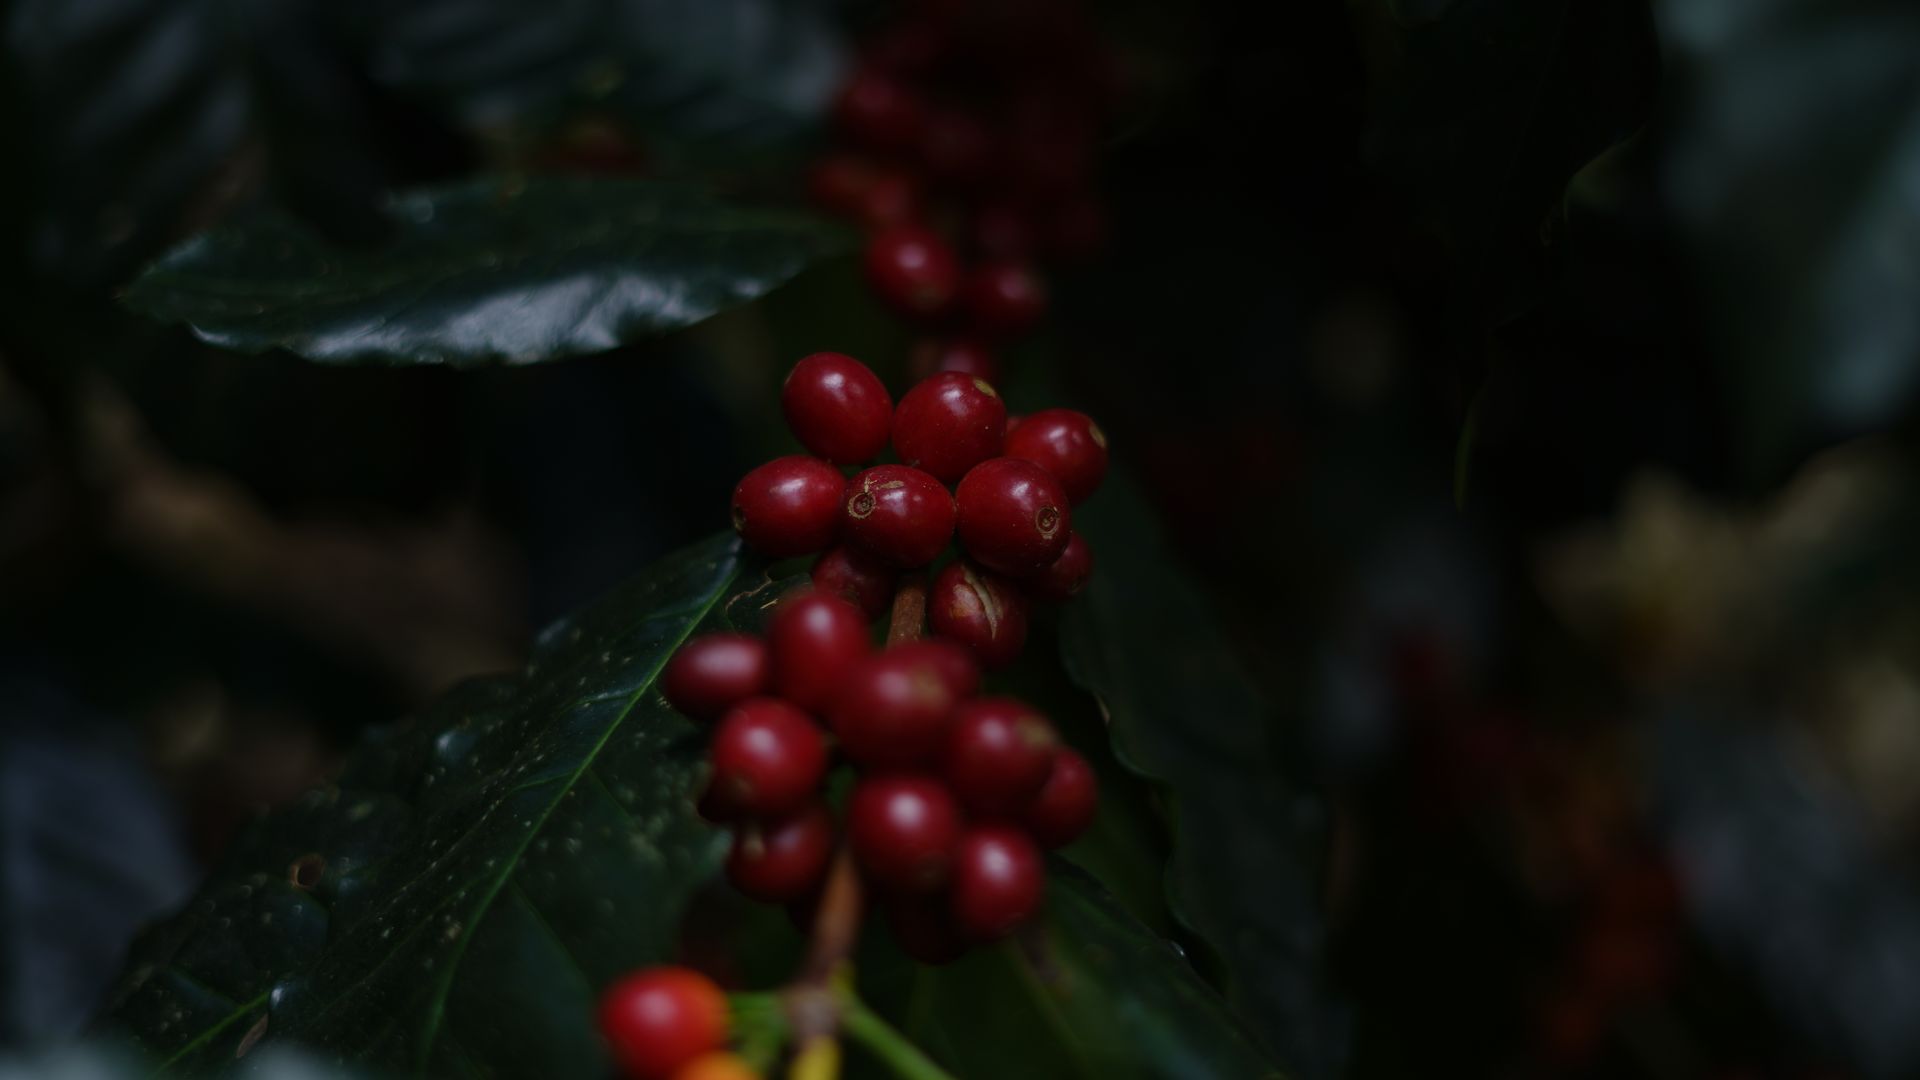 Conforme o grão do café avança no processo de maturação, a cor dele vai mudando de verde para vermelho, passando um estágio amarelado